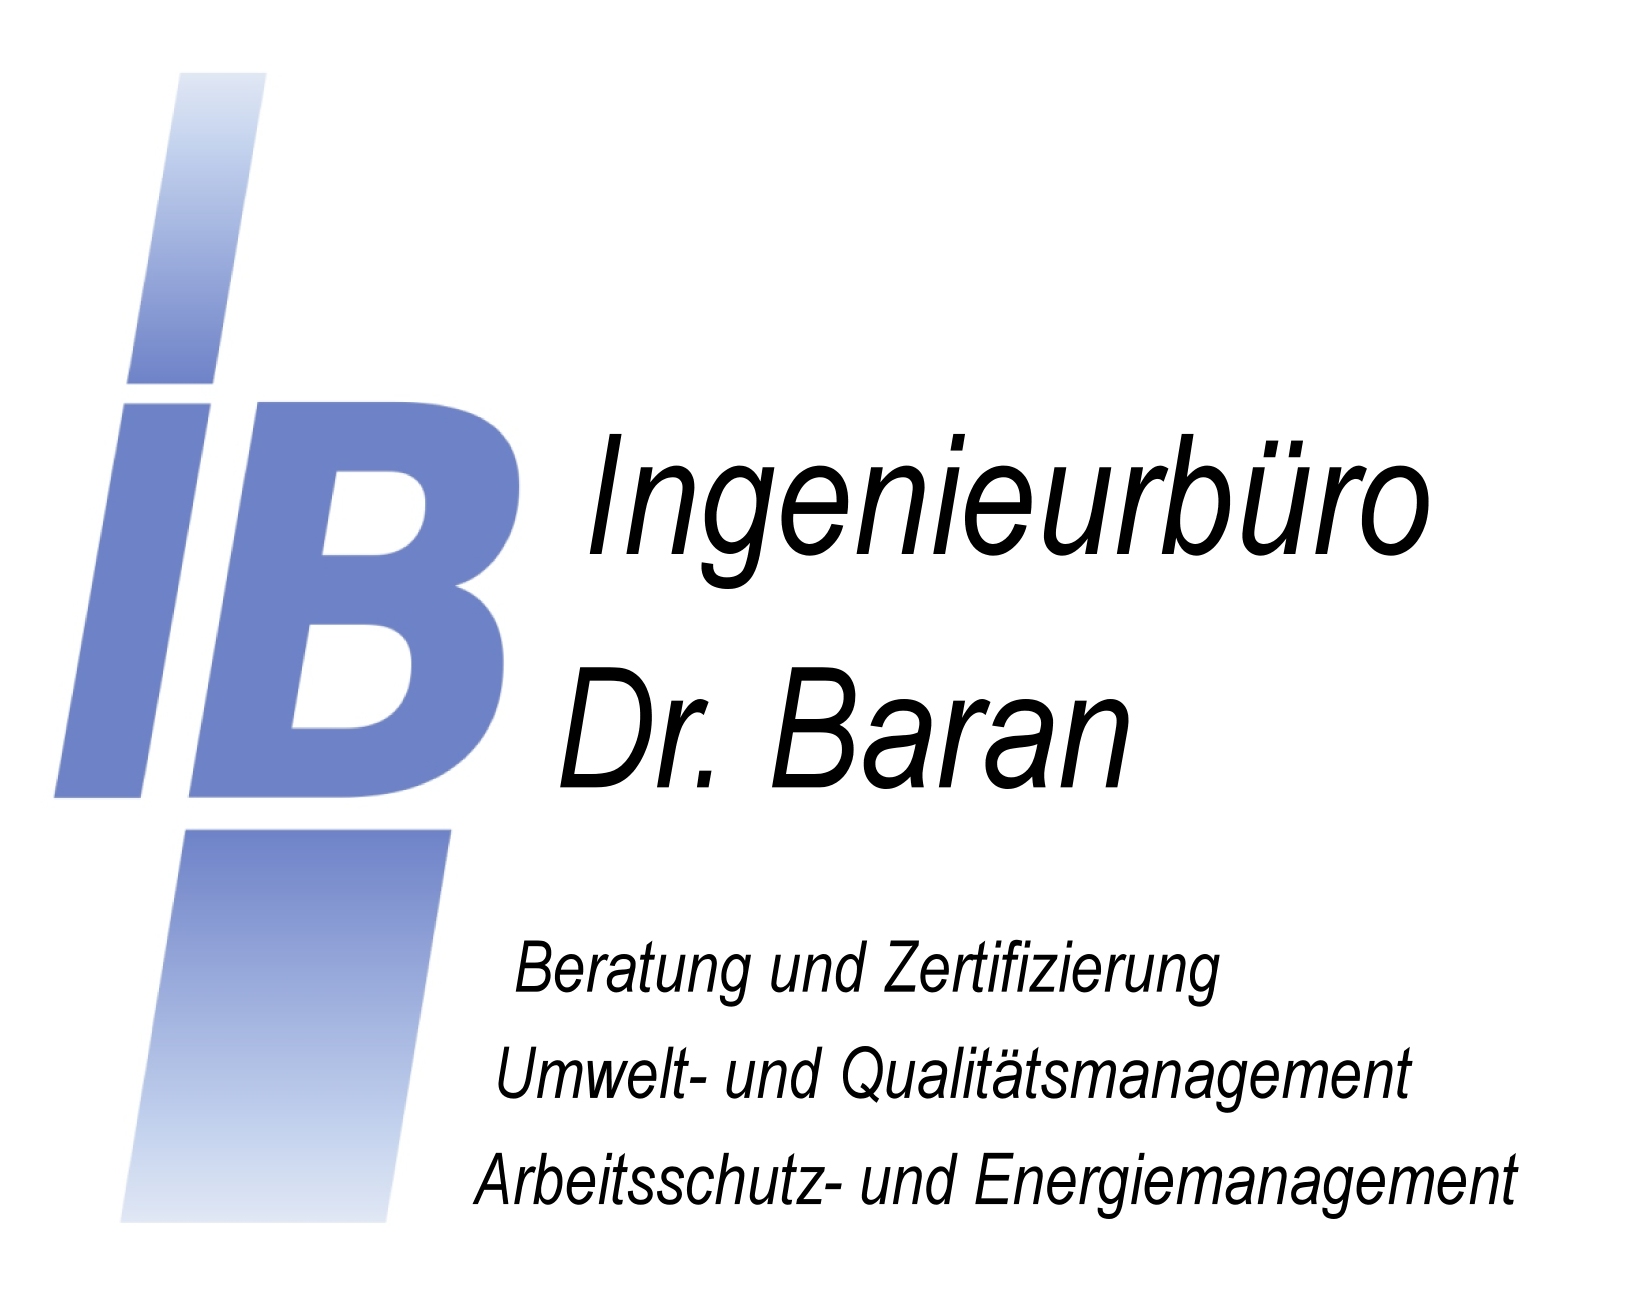 IB-Baran Logo